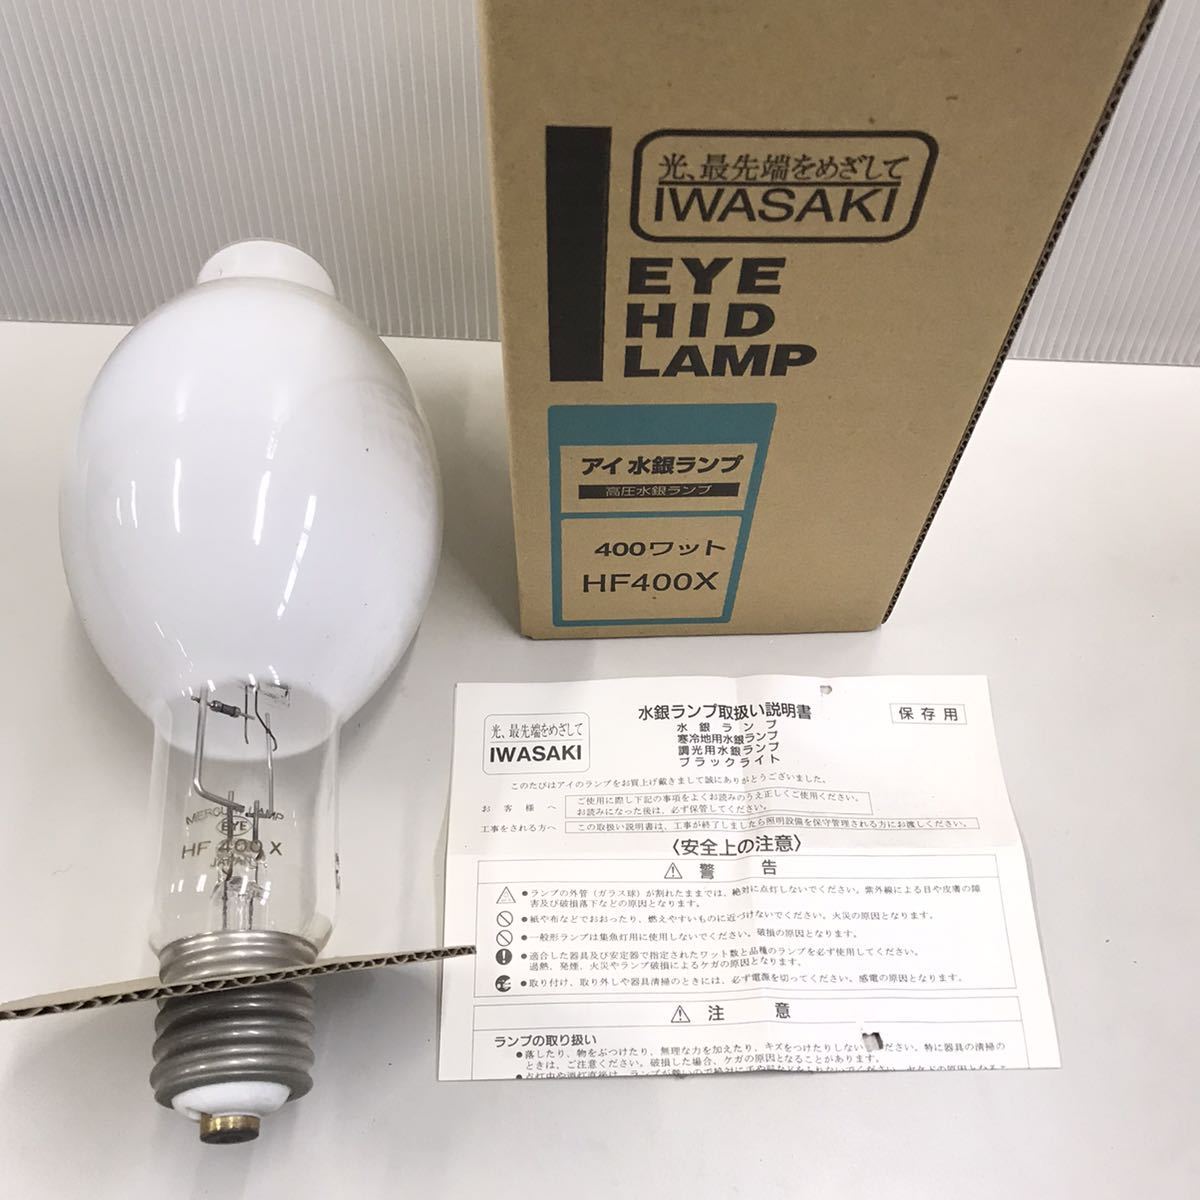 岩崎電気※水銀灯電球※HF400X※高圧水銀ランプ※アイ水銀ランプ www